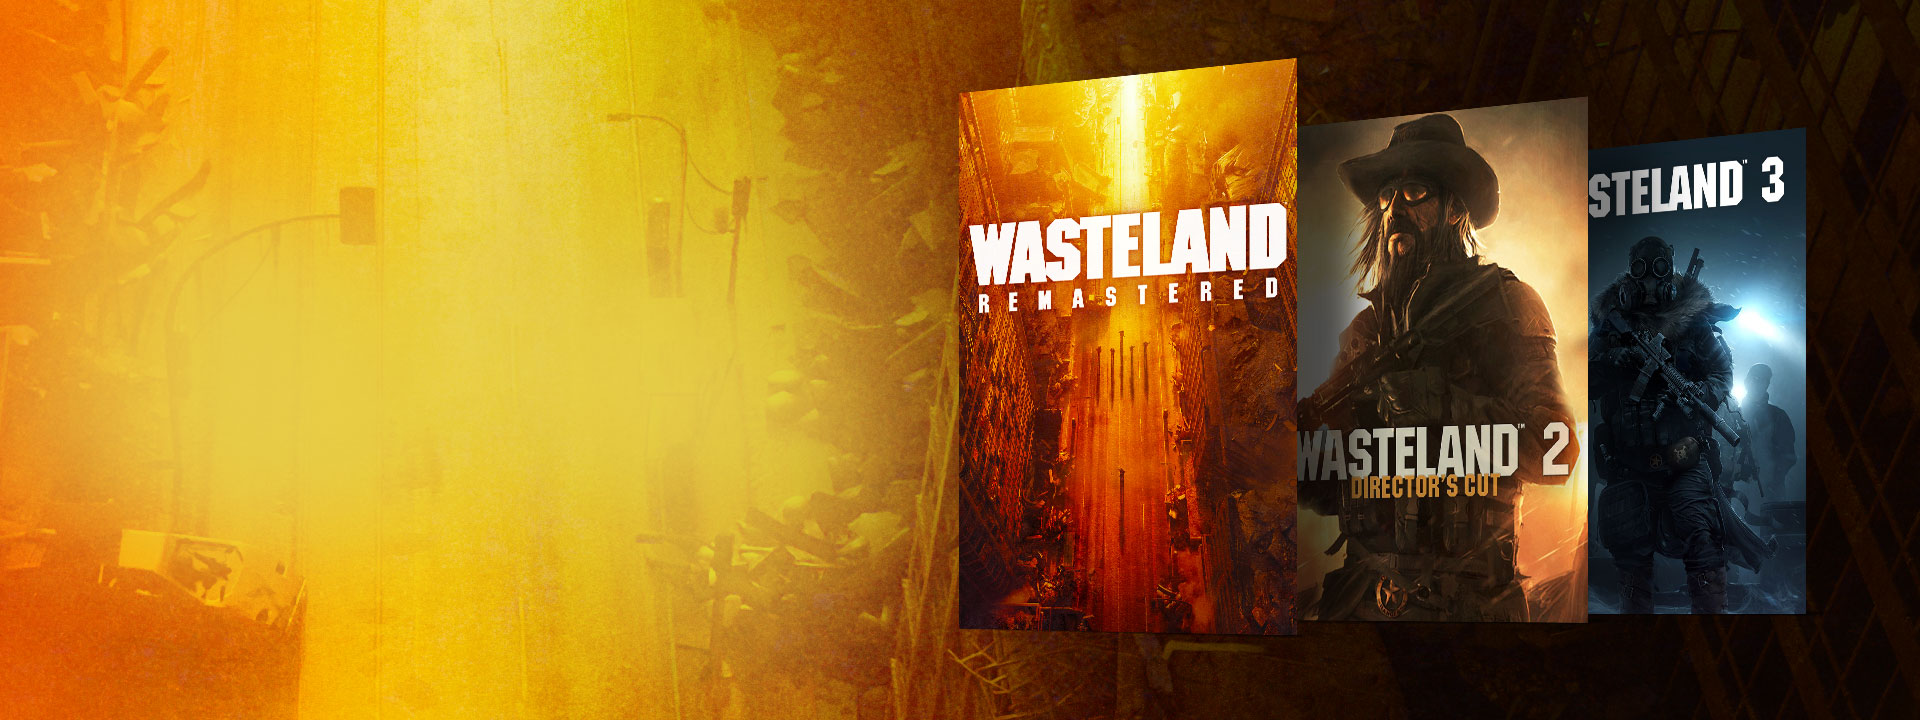 Imagens das caixas do Wasteland Remastered, Wasteland 2 Director’s Cut e Wasteland 3. Um fundo com uma rua abandonada em tons amarelos e laranja